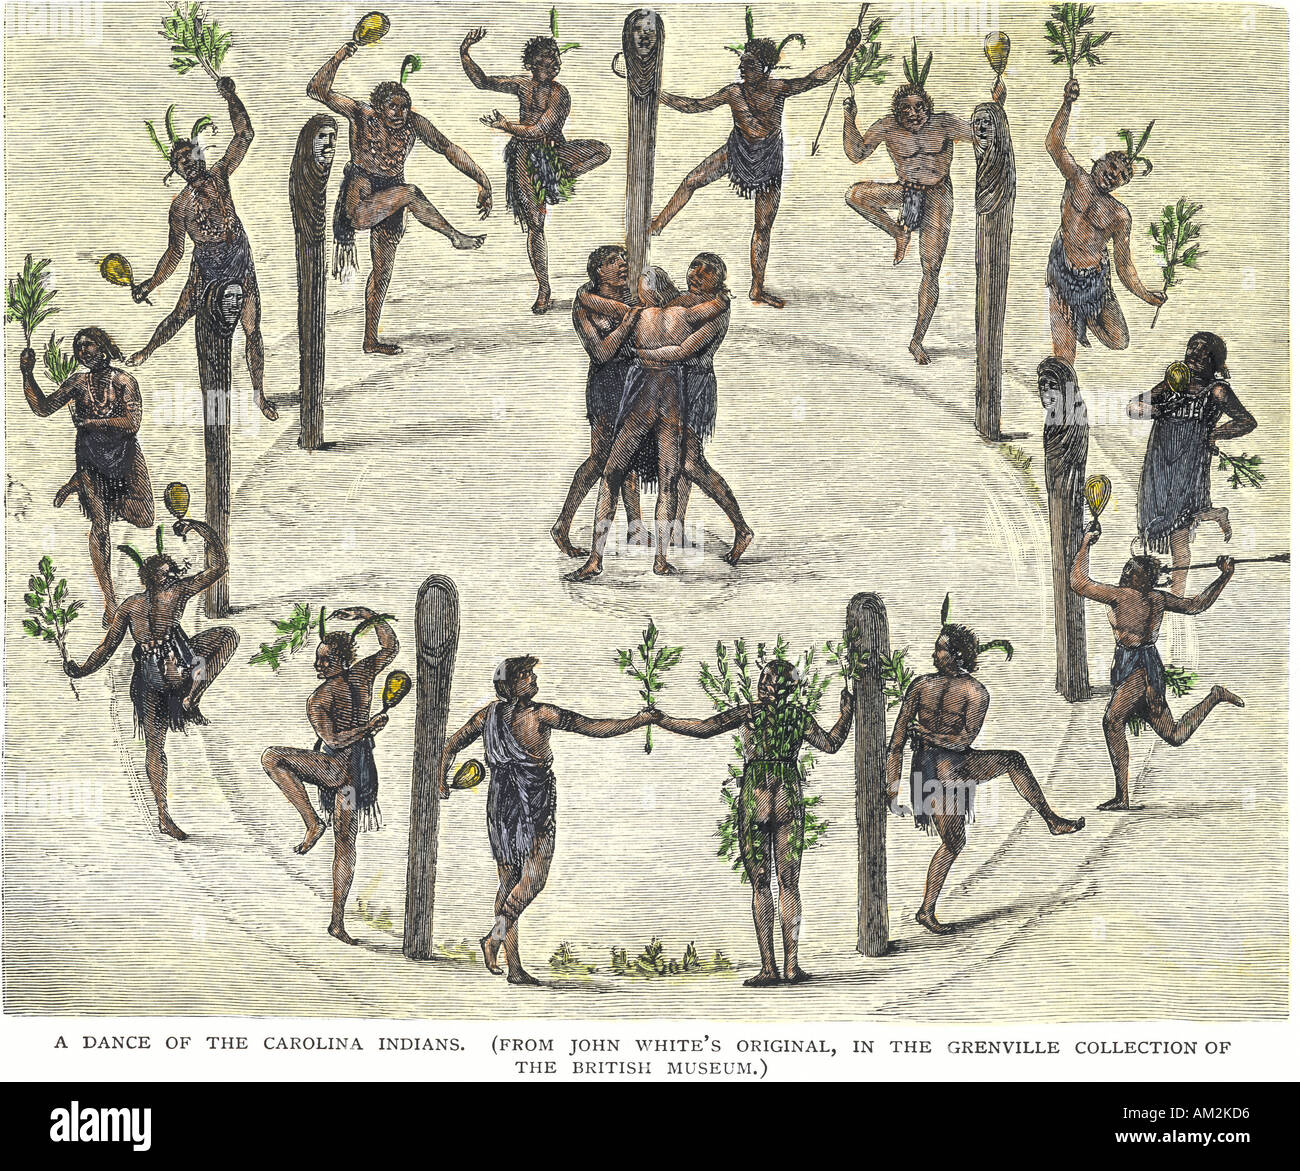 La danse de cérémonie de la Caroline du Nord Américains autochtones 1500s. À la main, gravure sur bois, d'un John White illustration Banque D'Images